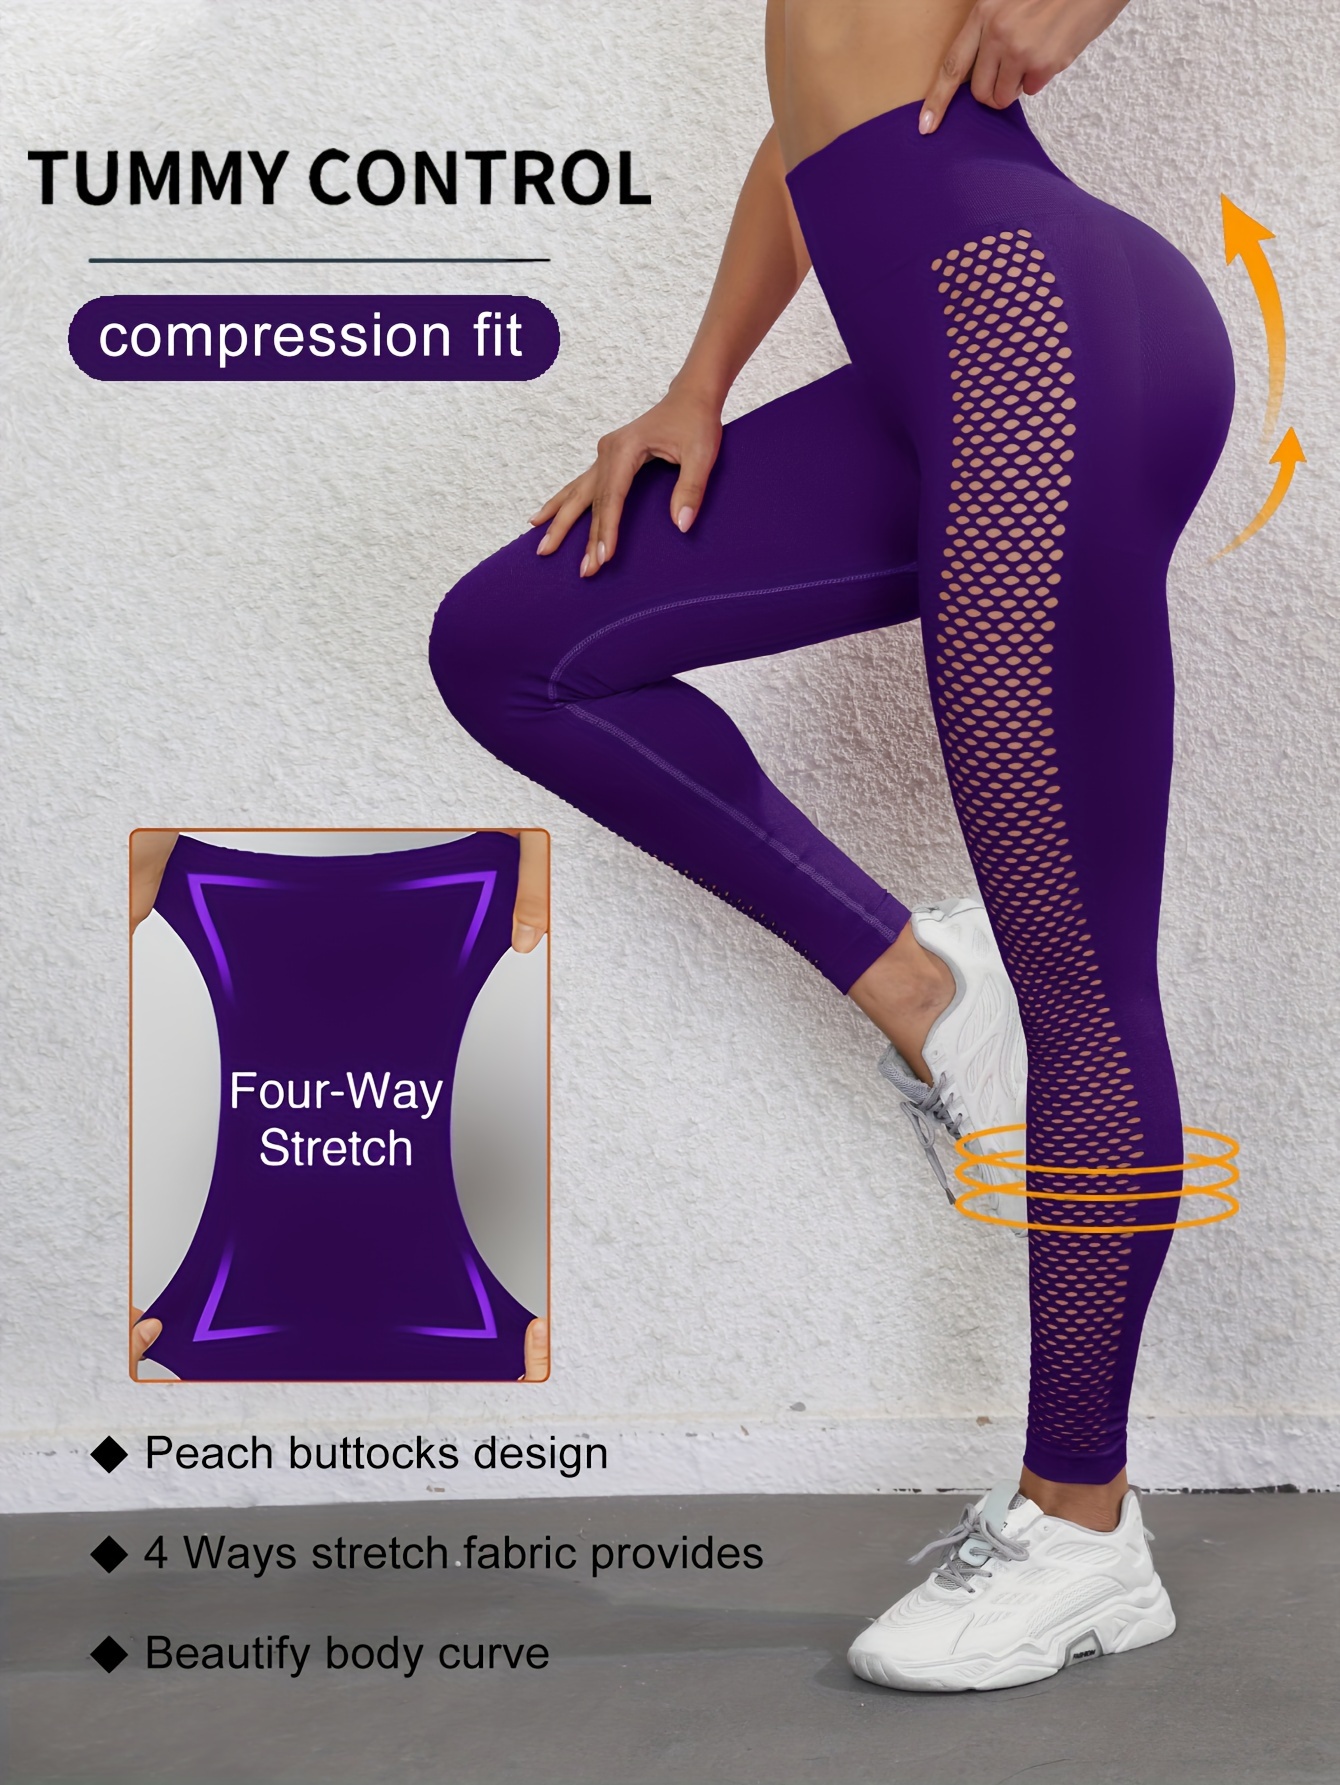 FITTOO Mallas Pantalones Deportivos Mujer Elásticos Transpirables para –  Deporte fashion